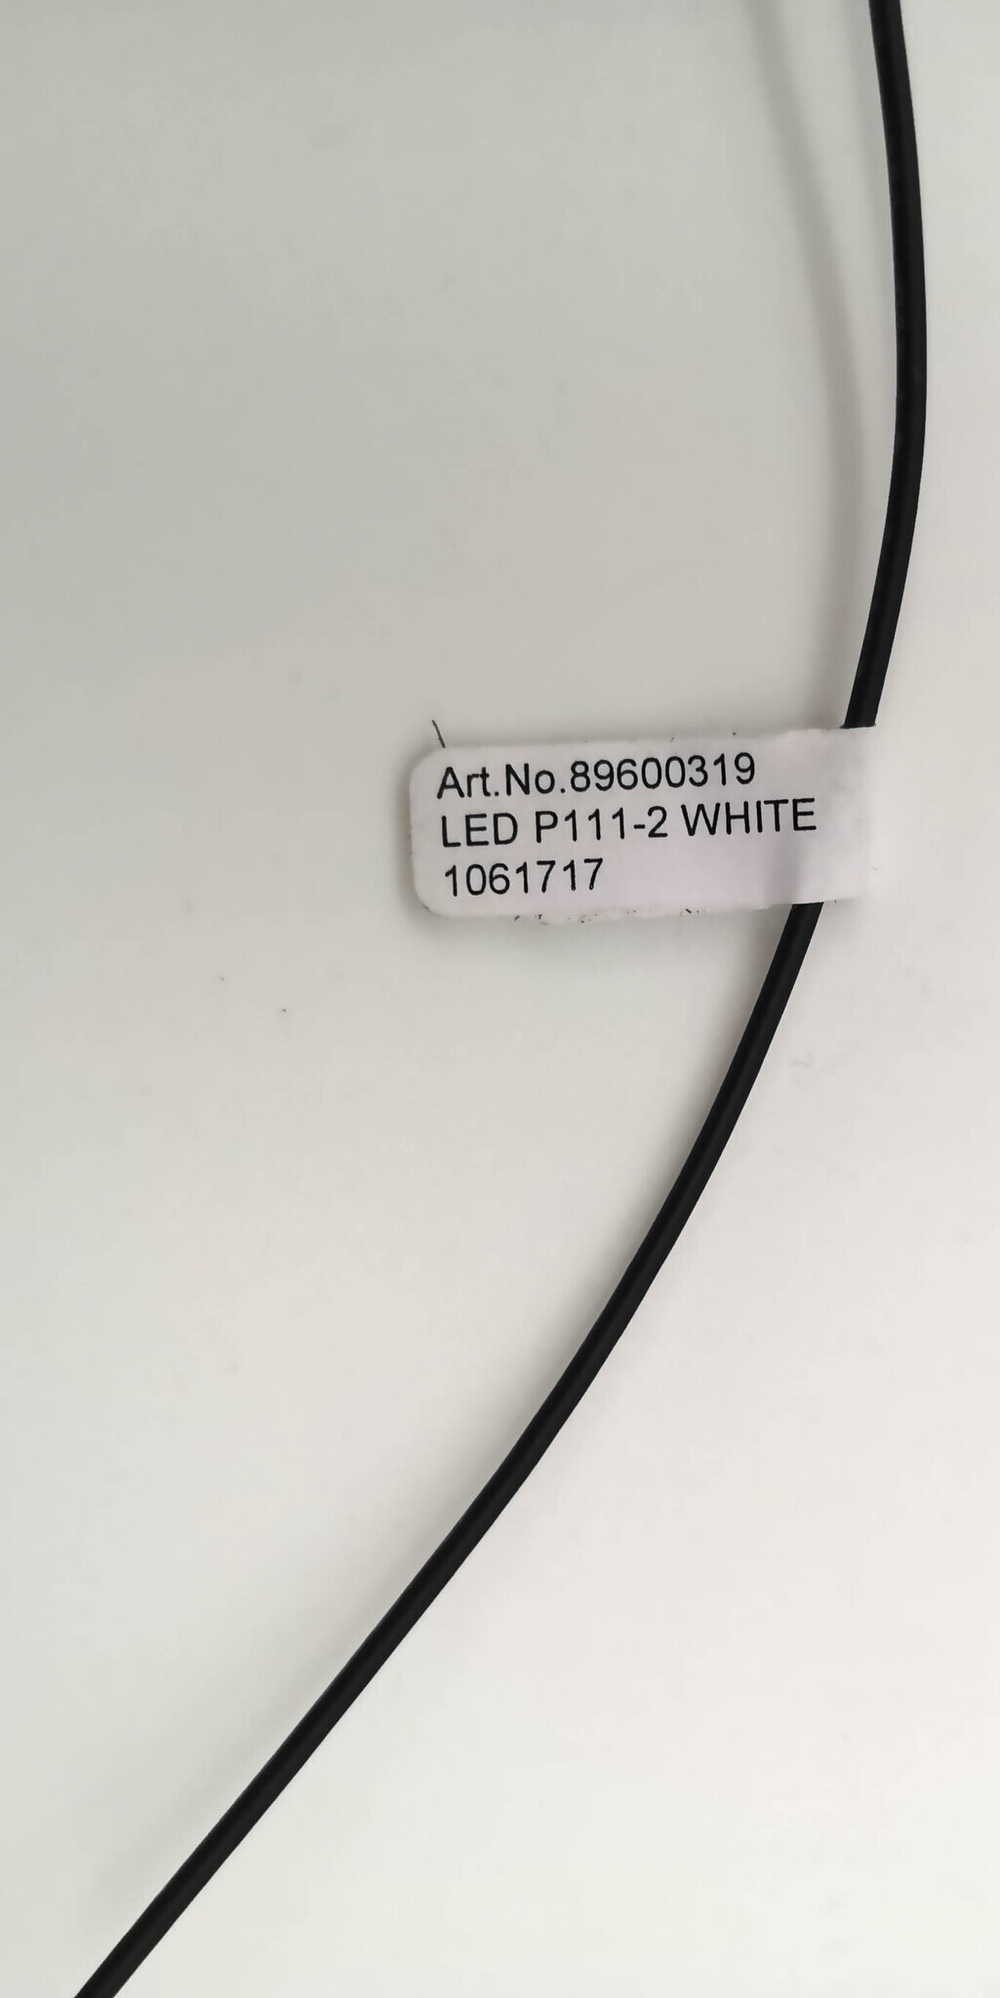 Светодиодная лента TRIDONIC ATCO LED P111-2W 24V 12-COB 200x8mm 140 89600319